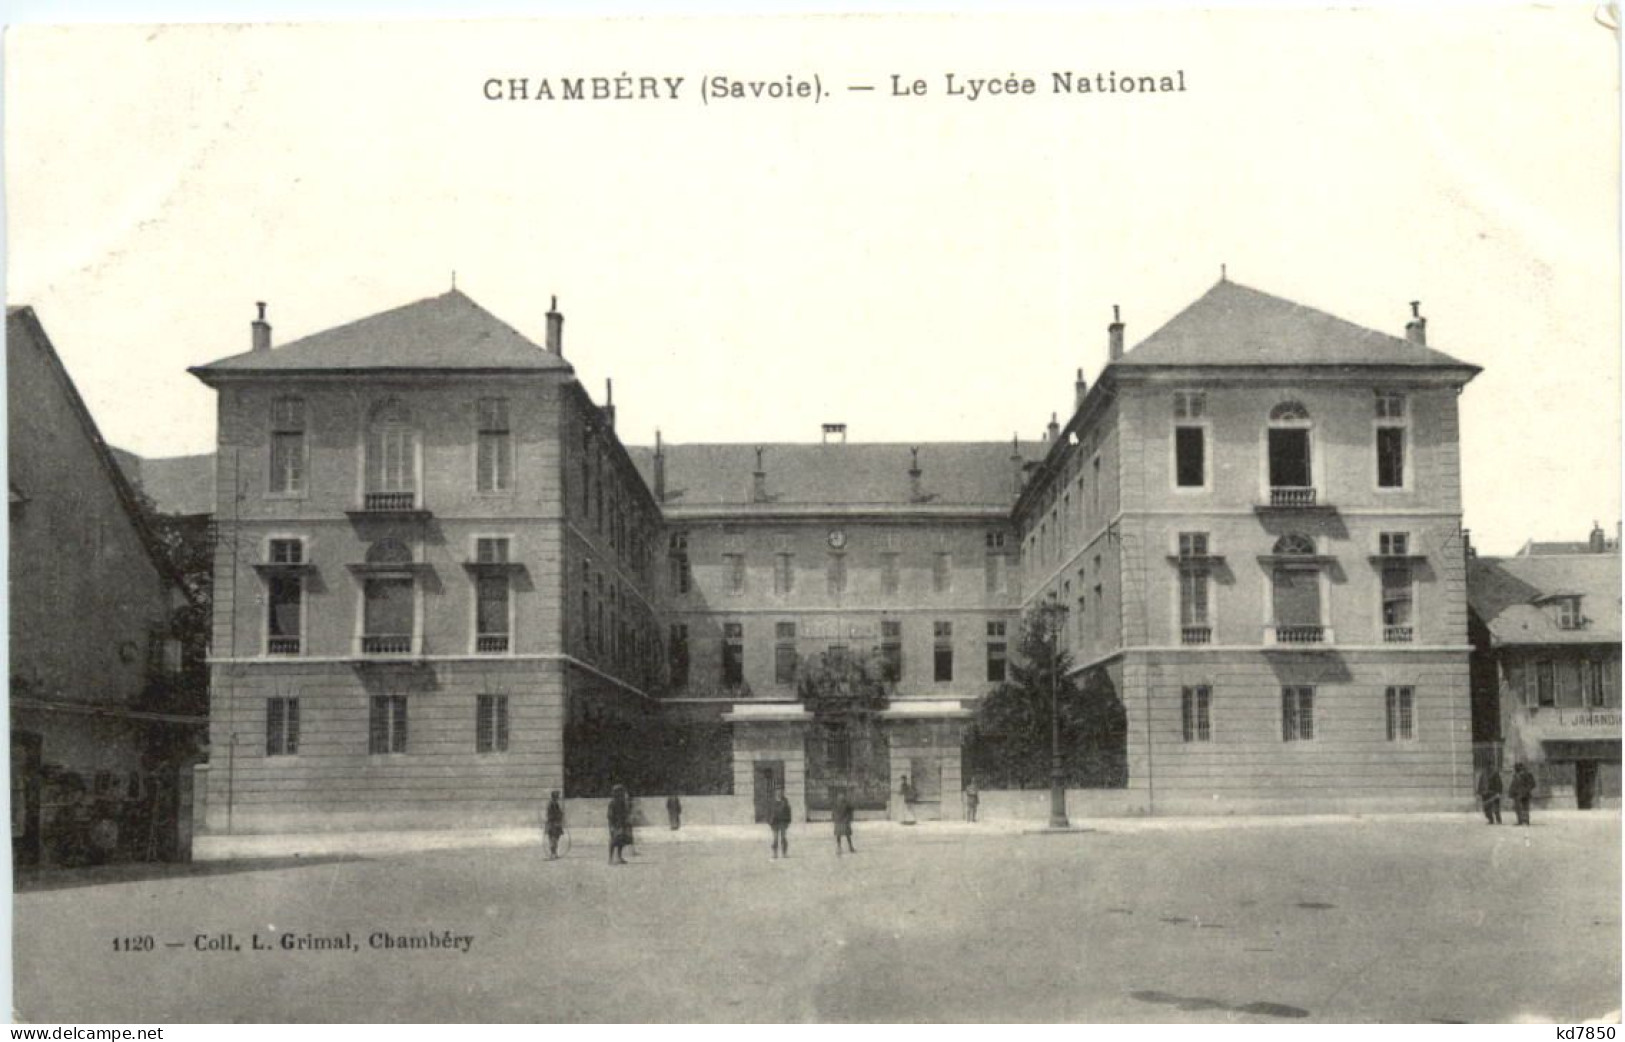 Chambery, Le Lycee National - Chambery